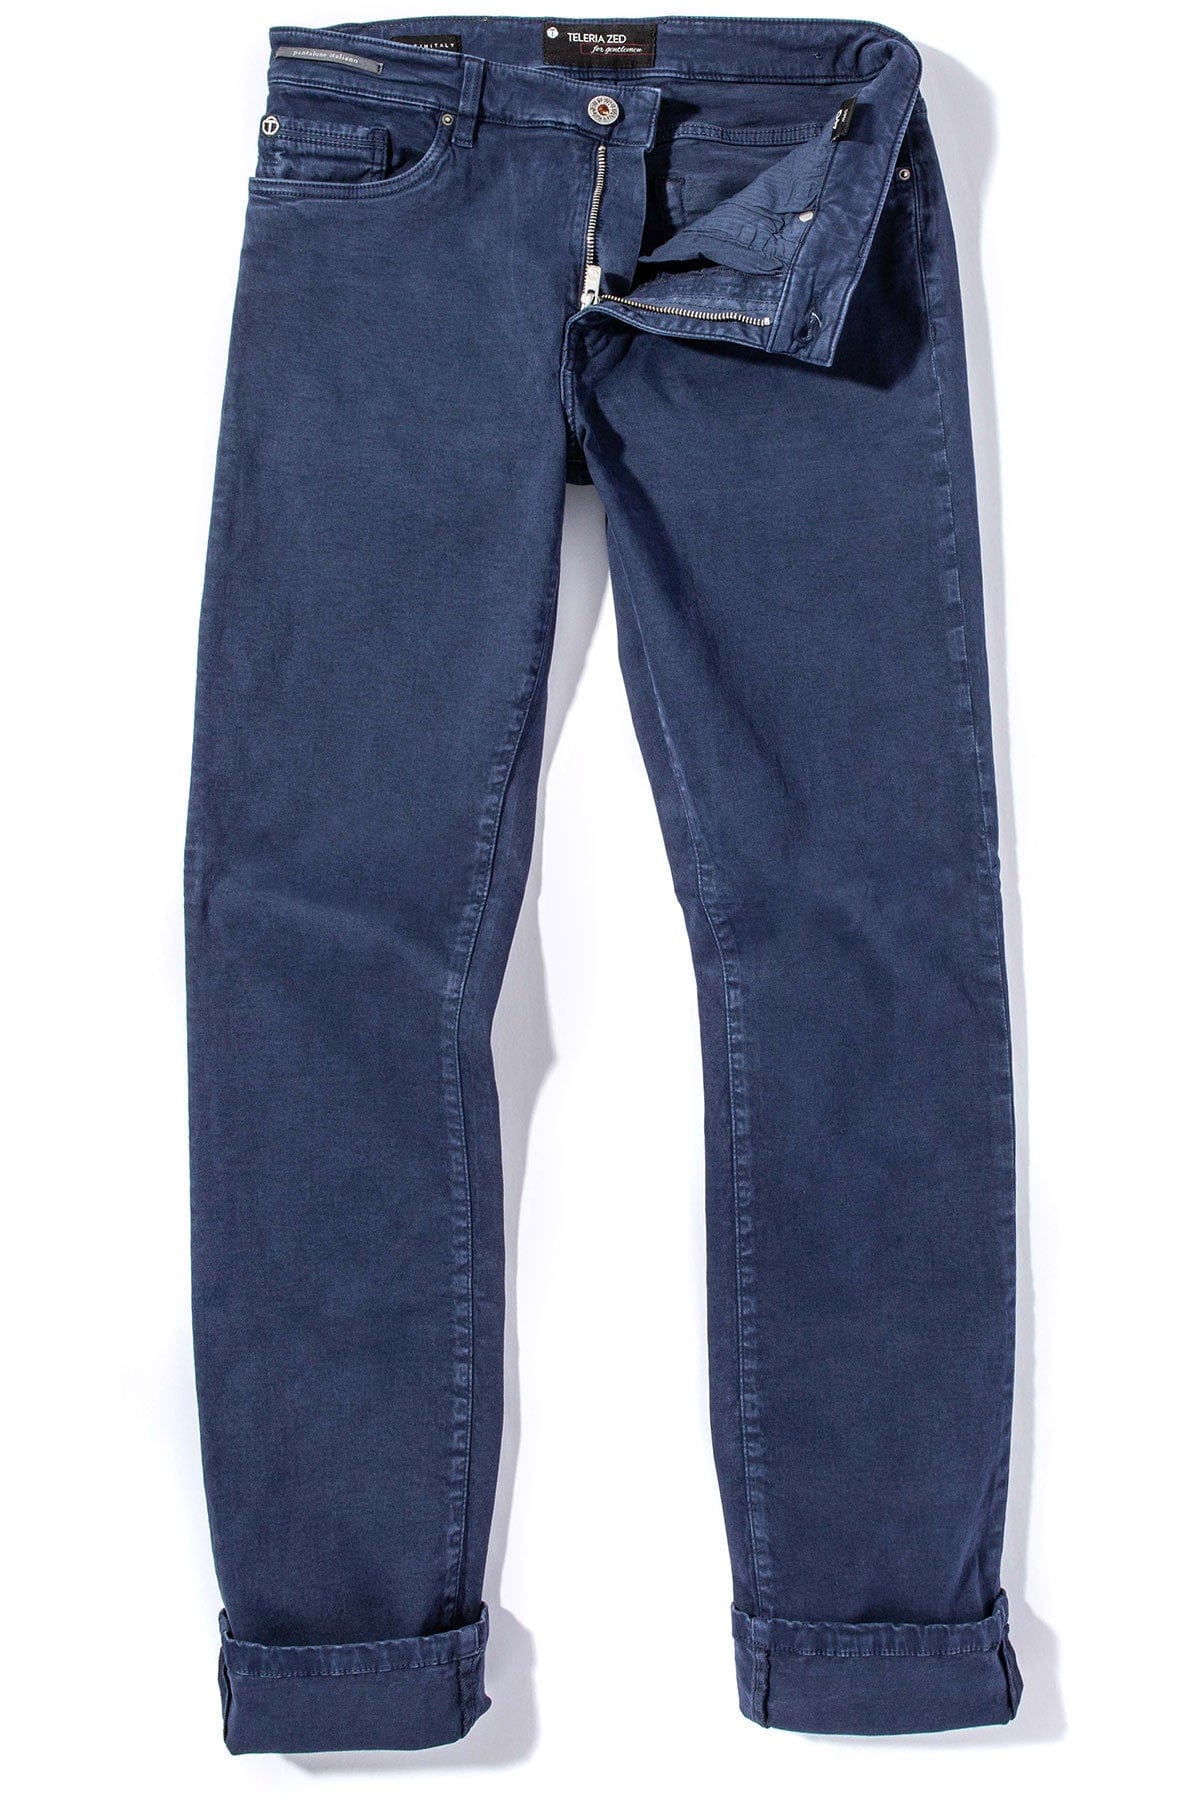 Buy Wholesale B2b Wholesale Boy Cotton Jeans Jeans Wholesale rs 525